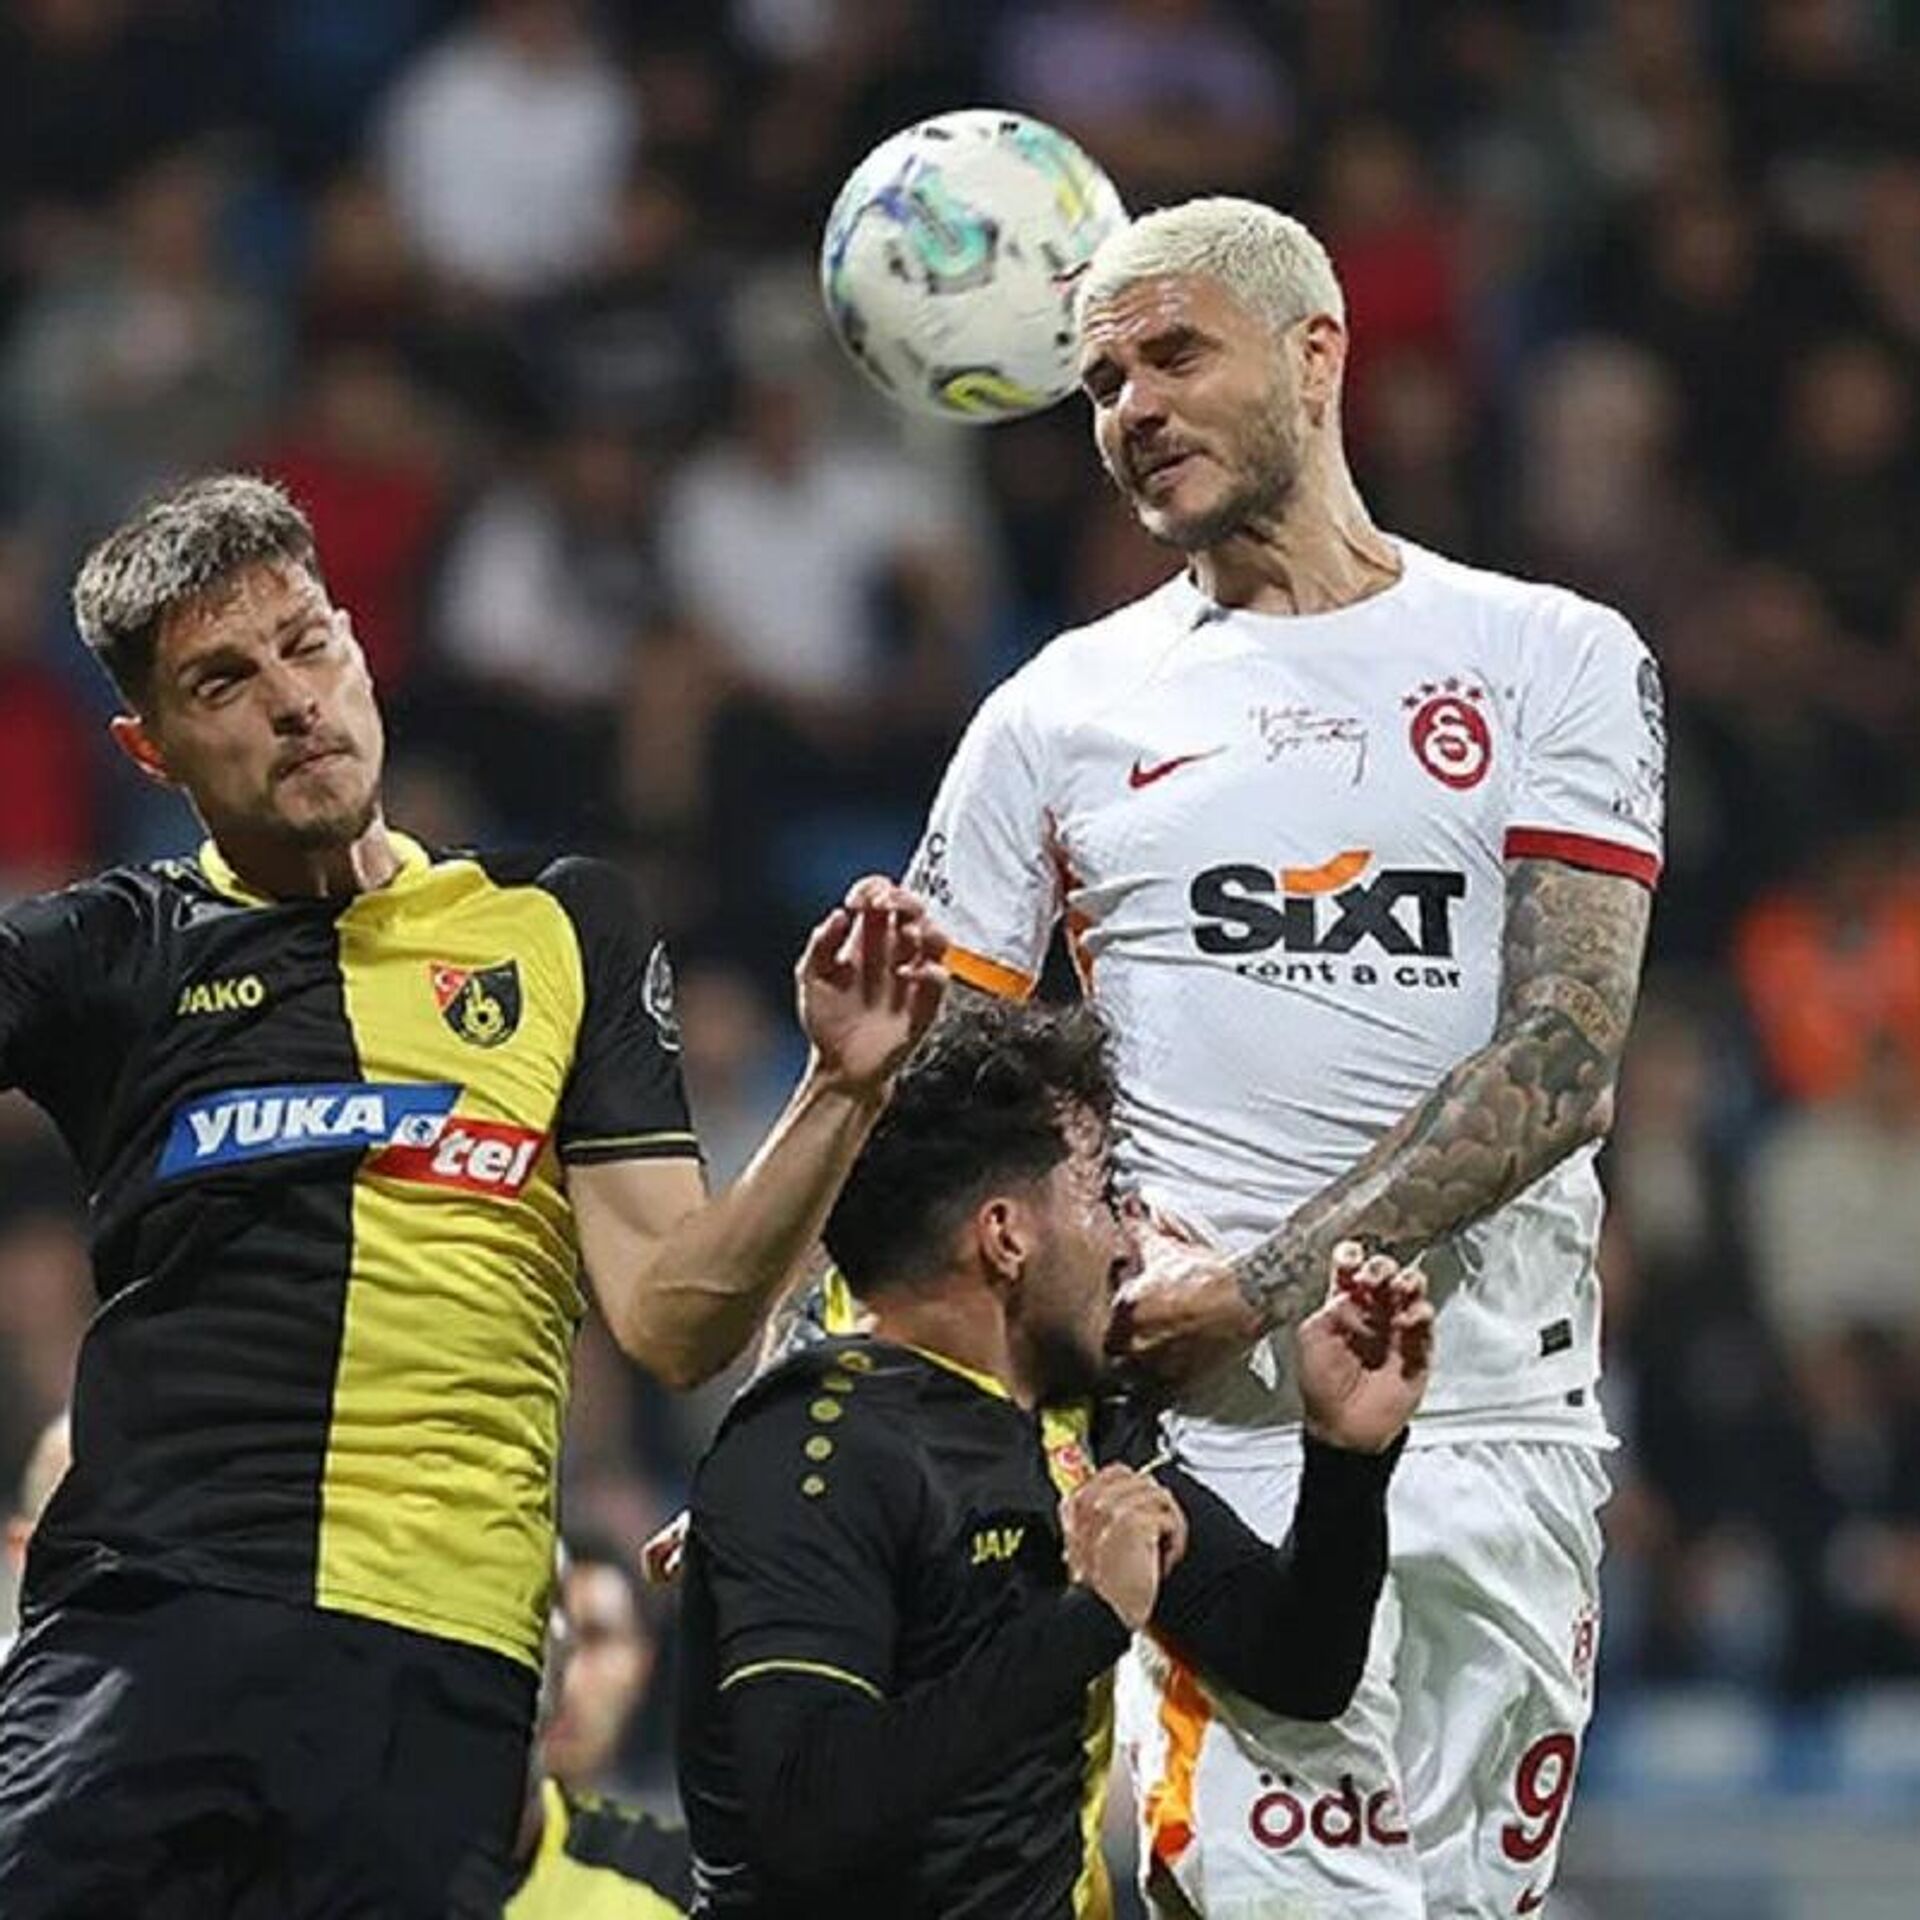 ÖZET, Beşiktaş 2 0 İstanbulspor